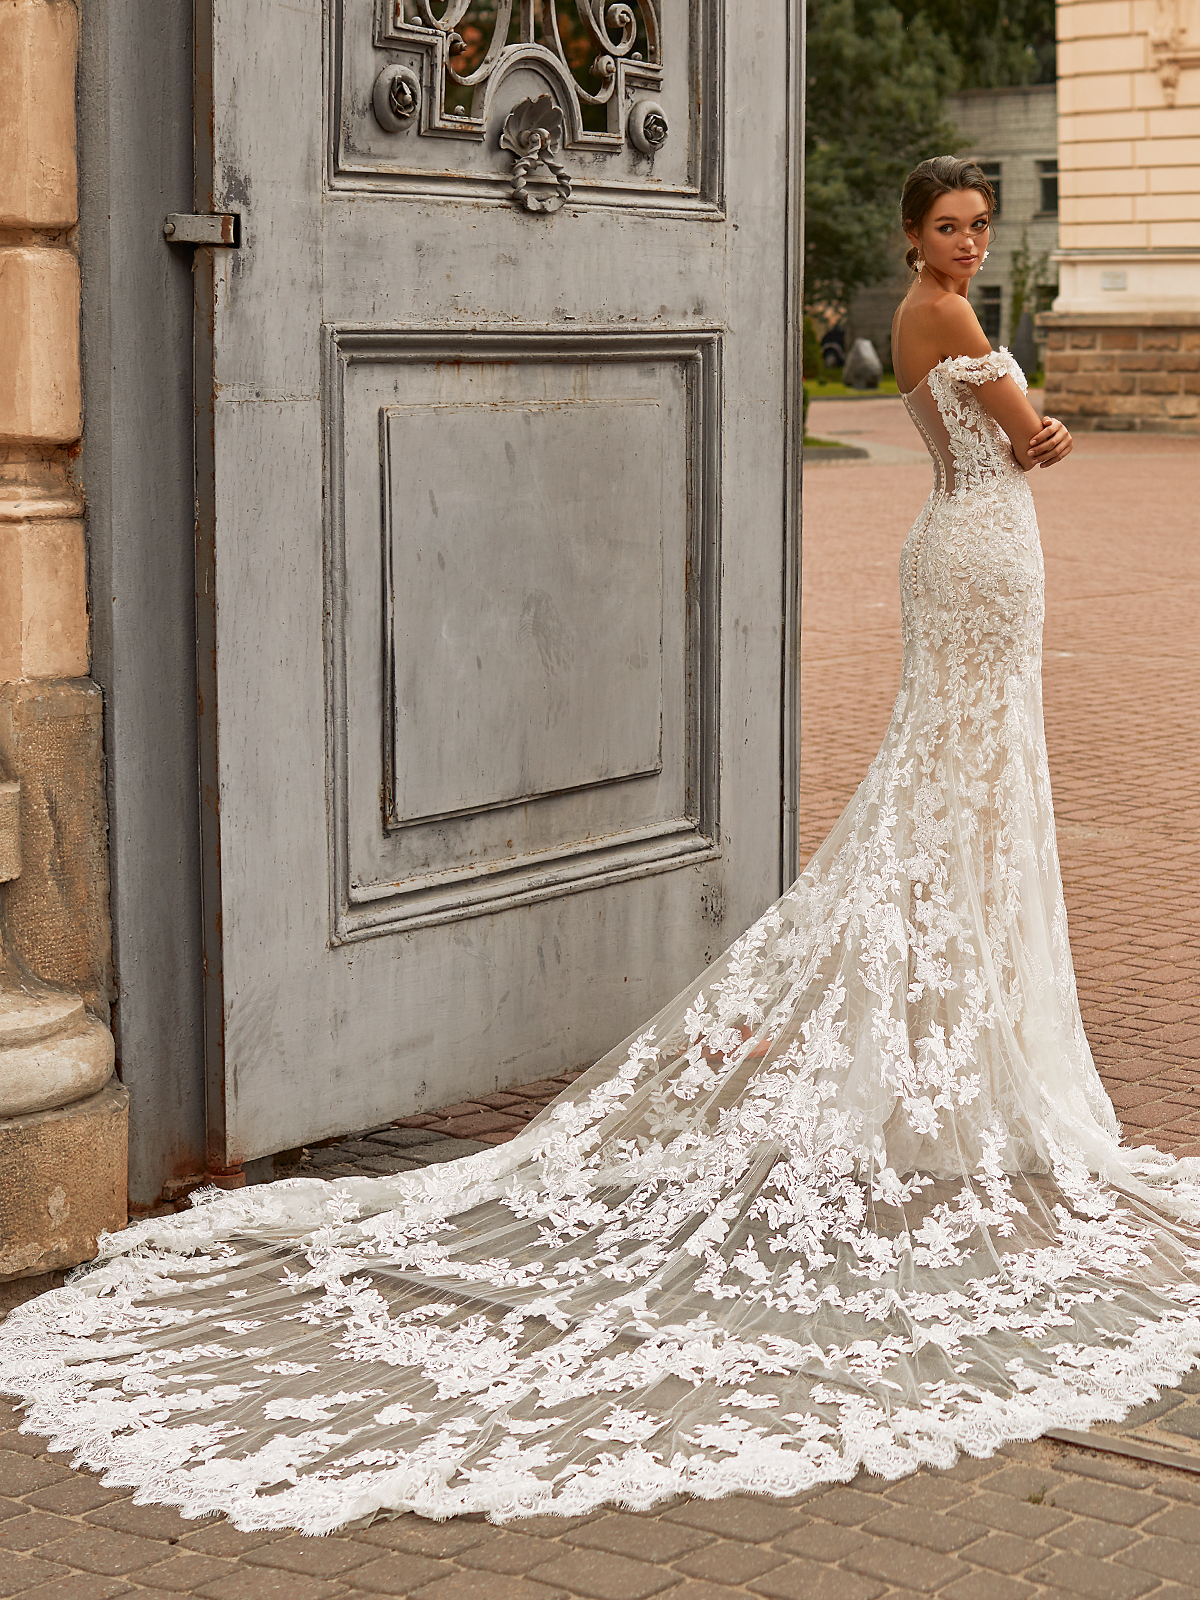 65 Stunning HighNeck Wedding Gowns  BridalGuide